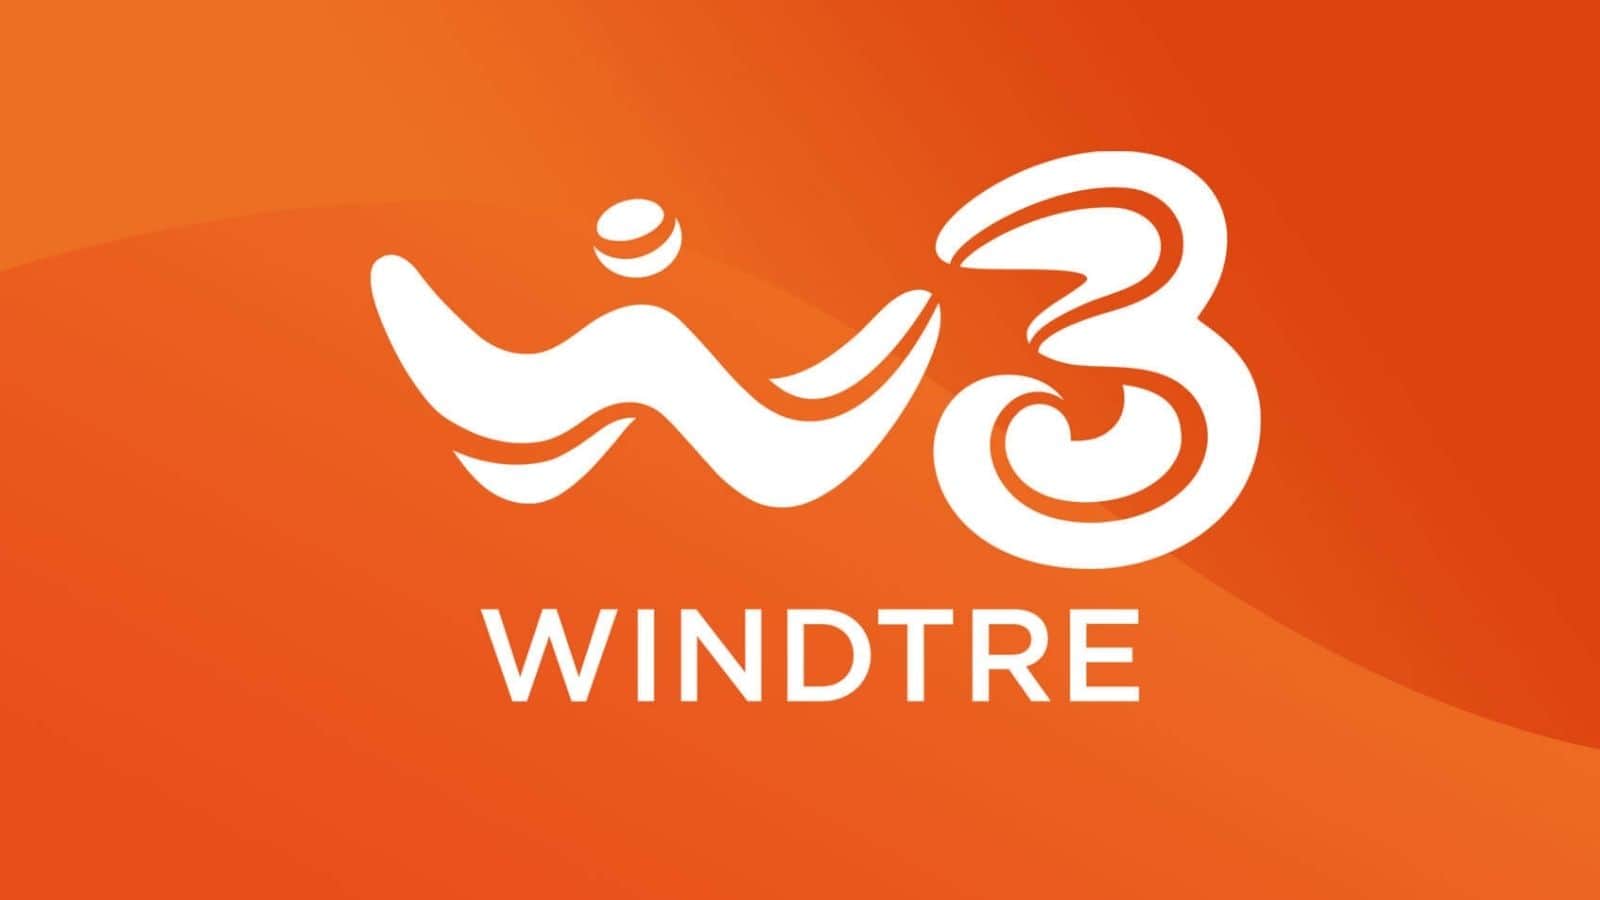 WindTre abbandona ufficialmente il 3G: che significa per gli utenti?